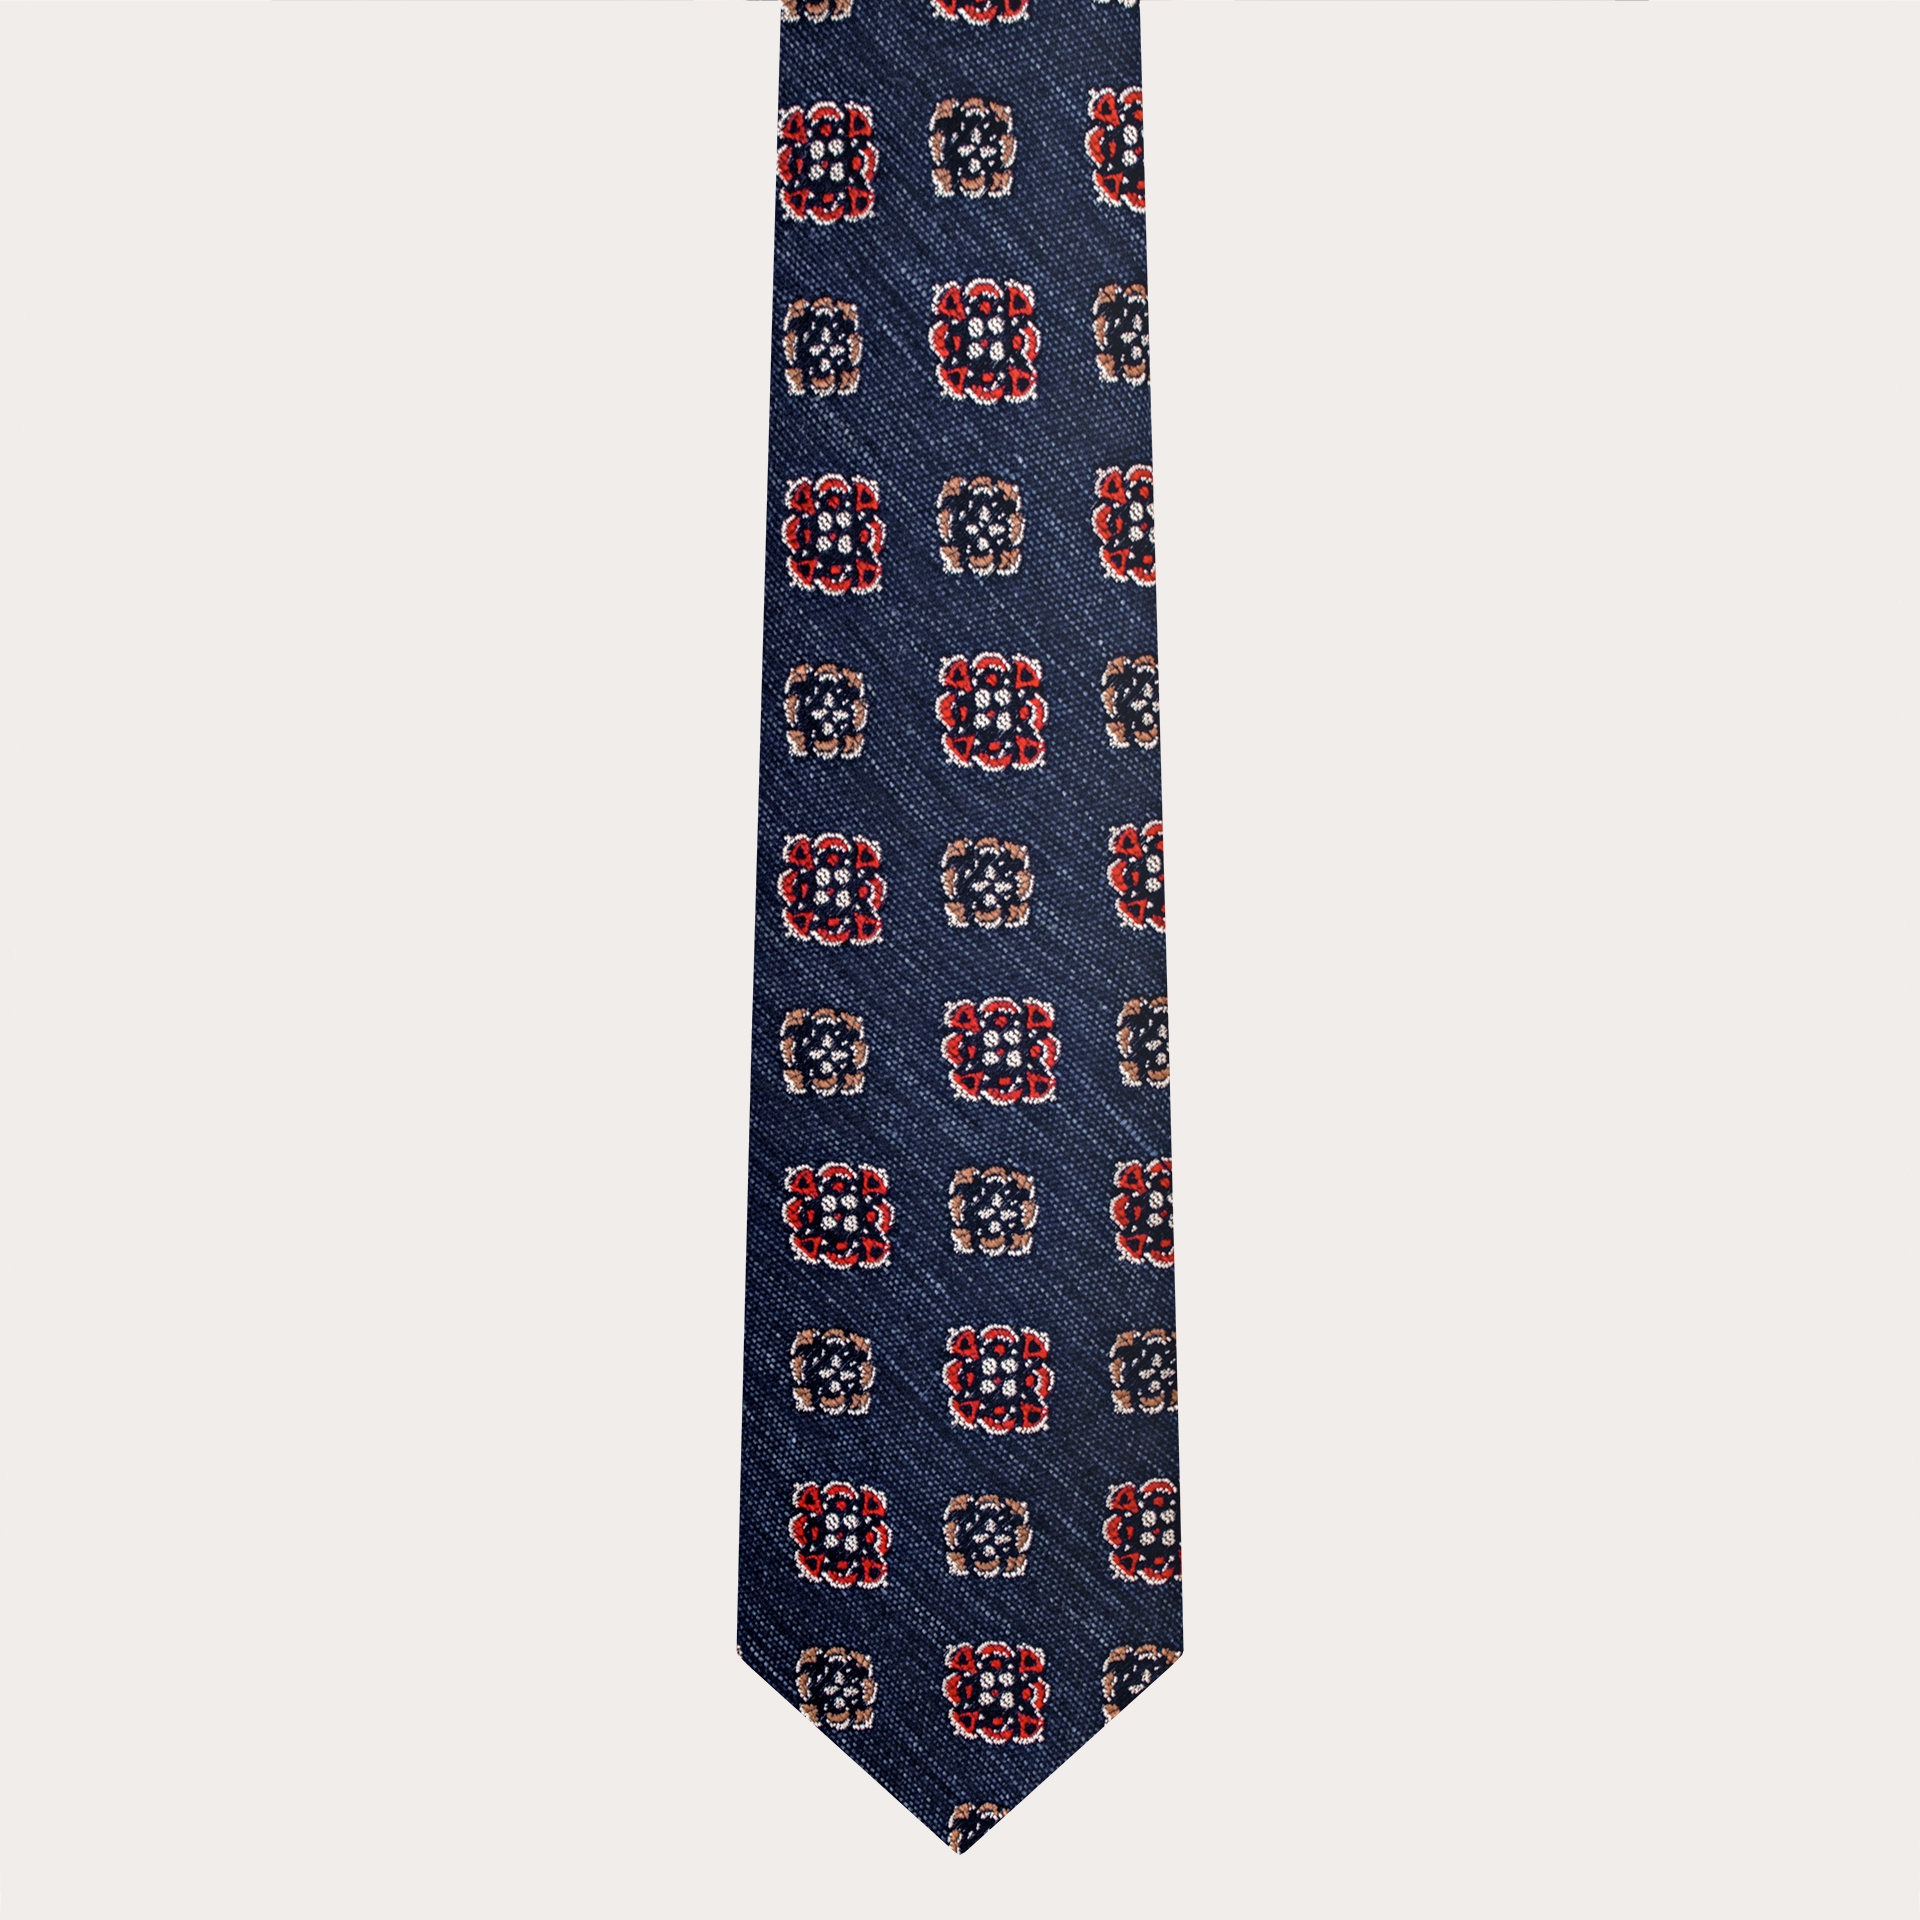 BRUCLE Cravate en soie et coton, motif denim à fleurs géométriques